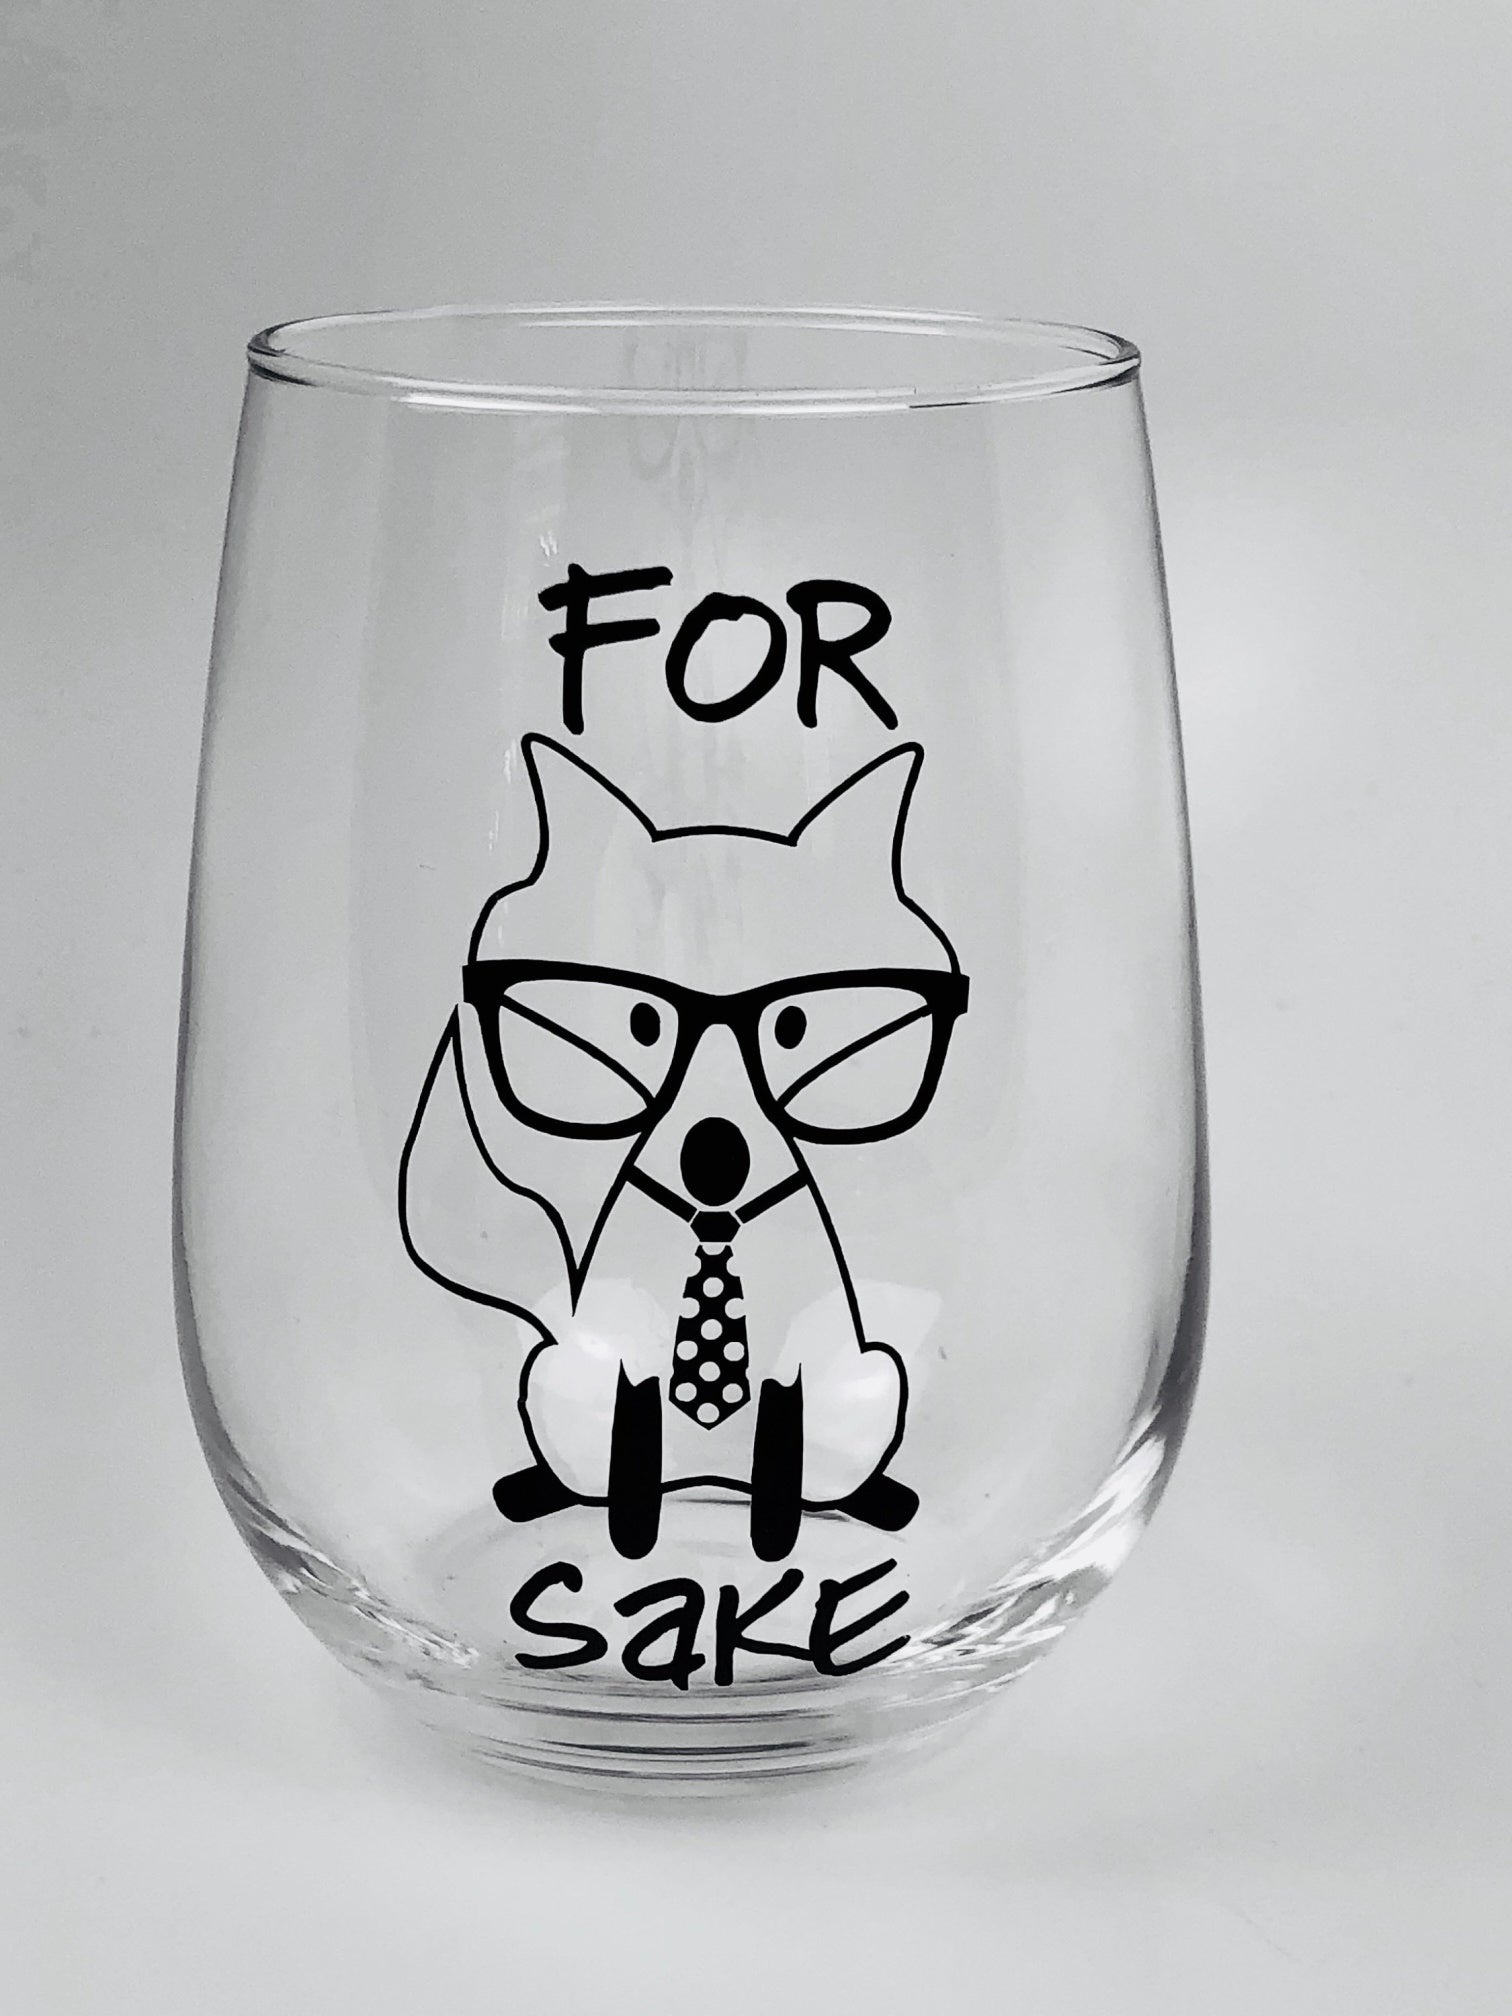 Nerdy "For Fox Sake" stemless wineglass/tumbler